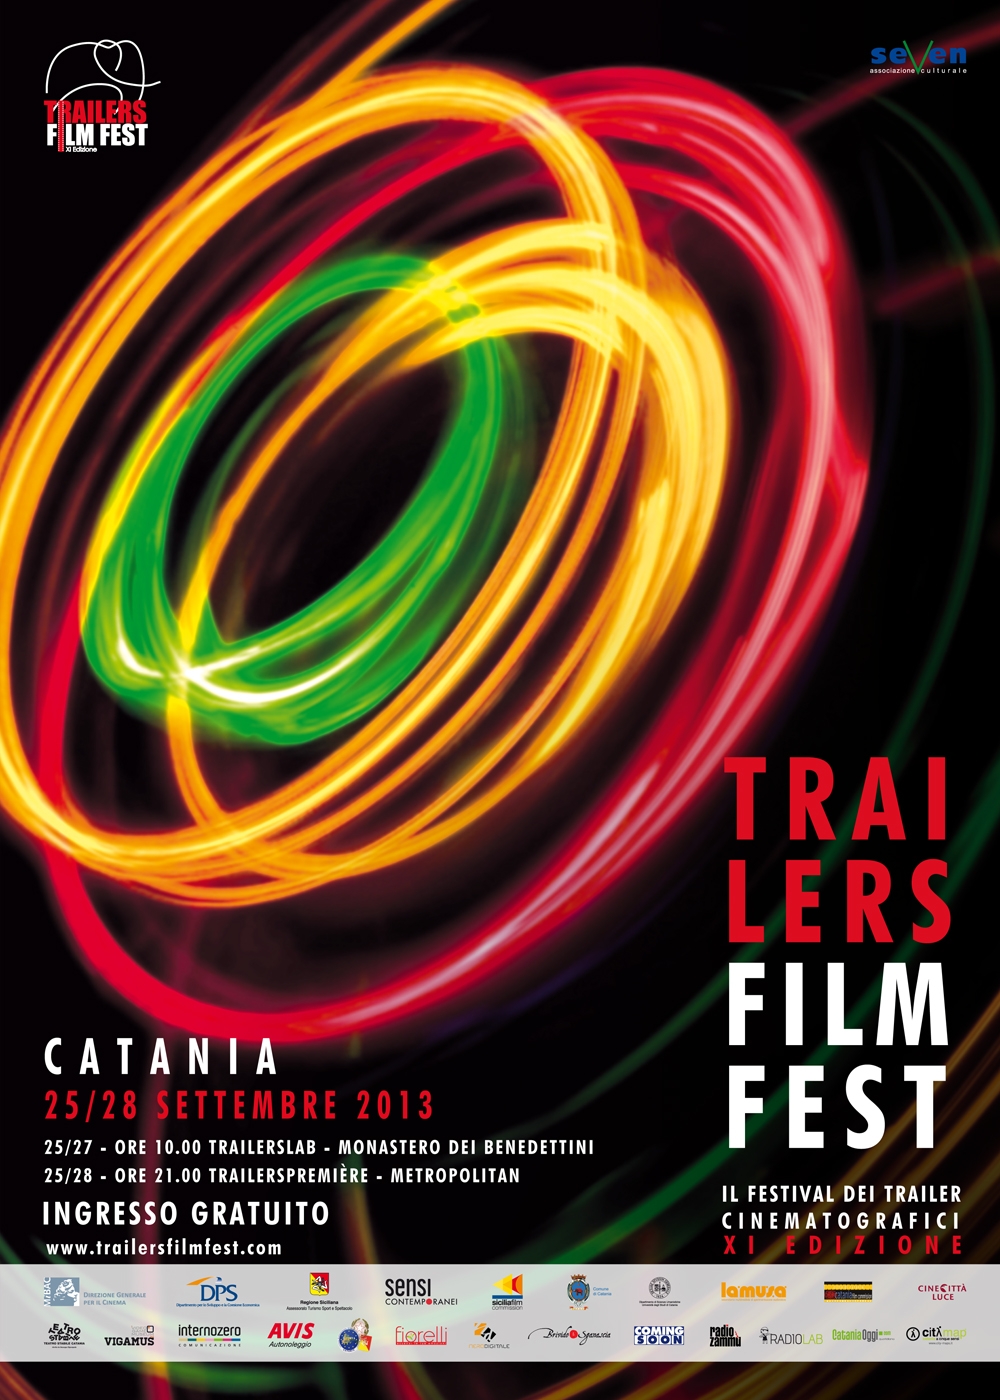 Trailers Film Fest: il festival che premia i migliori trailer dell'anno